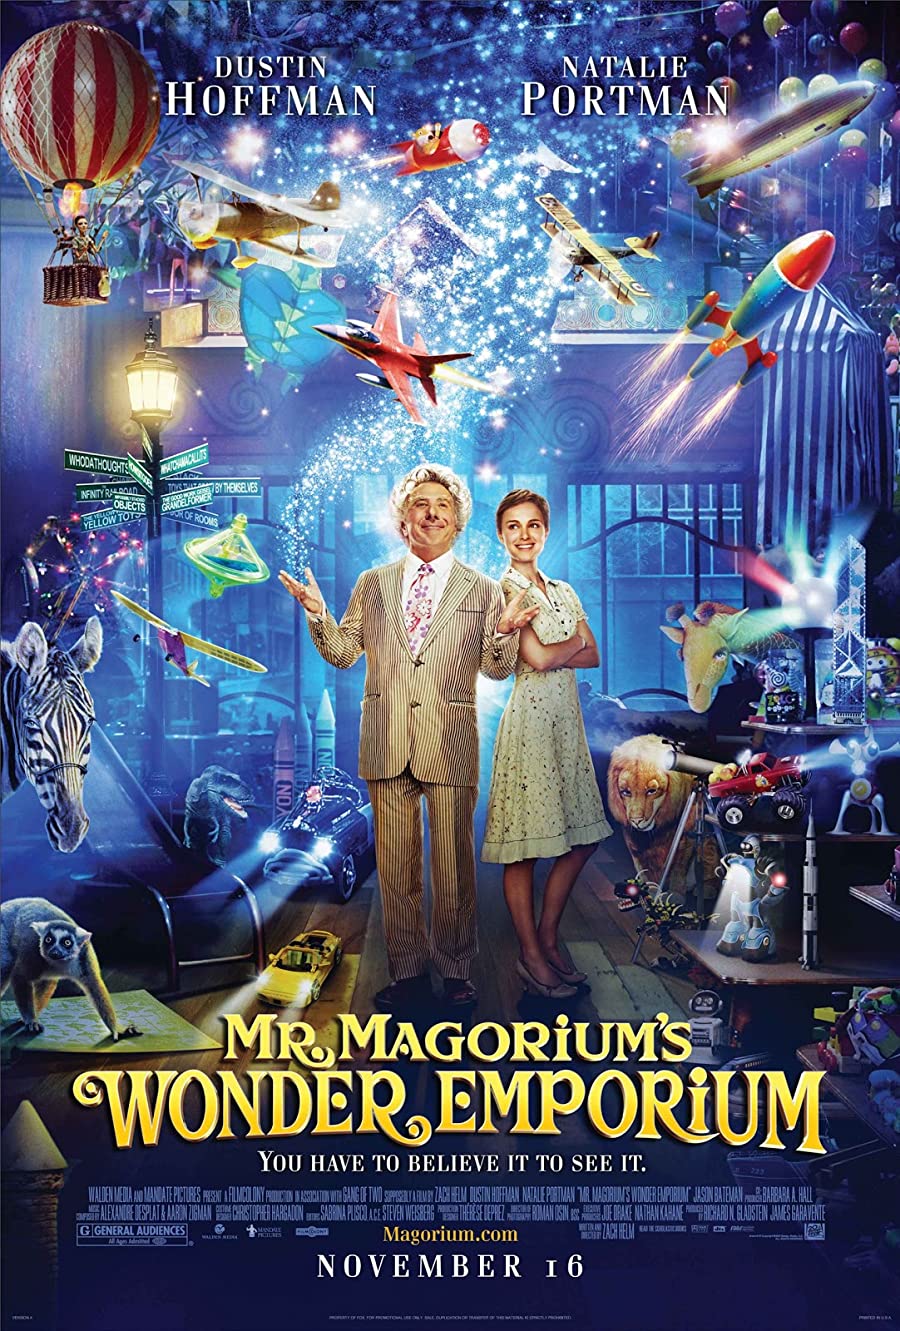 دانلود انیمیشن Mr. Magorium’s Wonder Emporium 2007 فروشگاه شگفت انگیز ماگاریم با دوبله فارسی